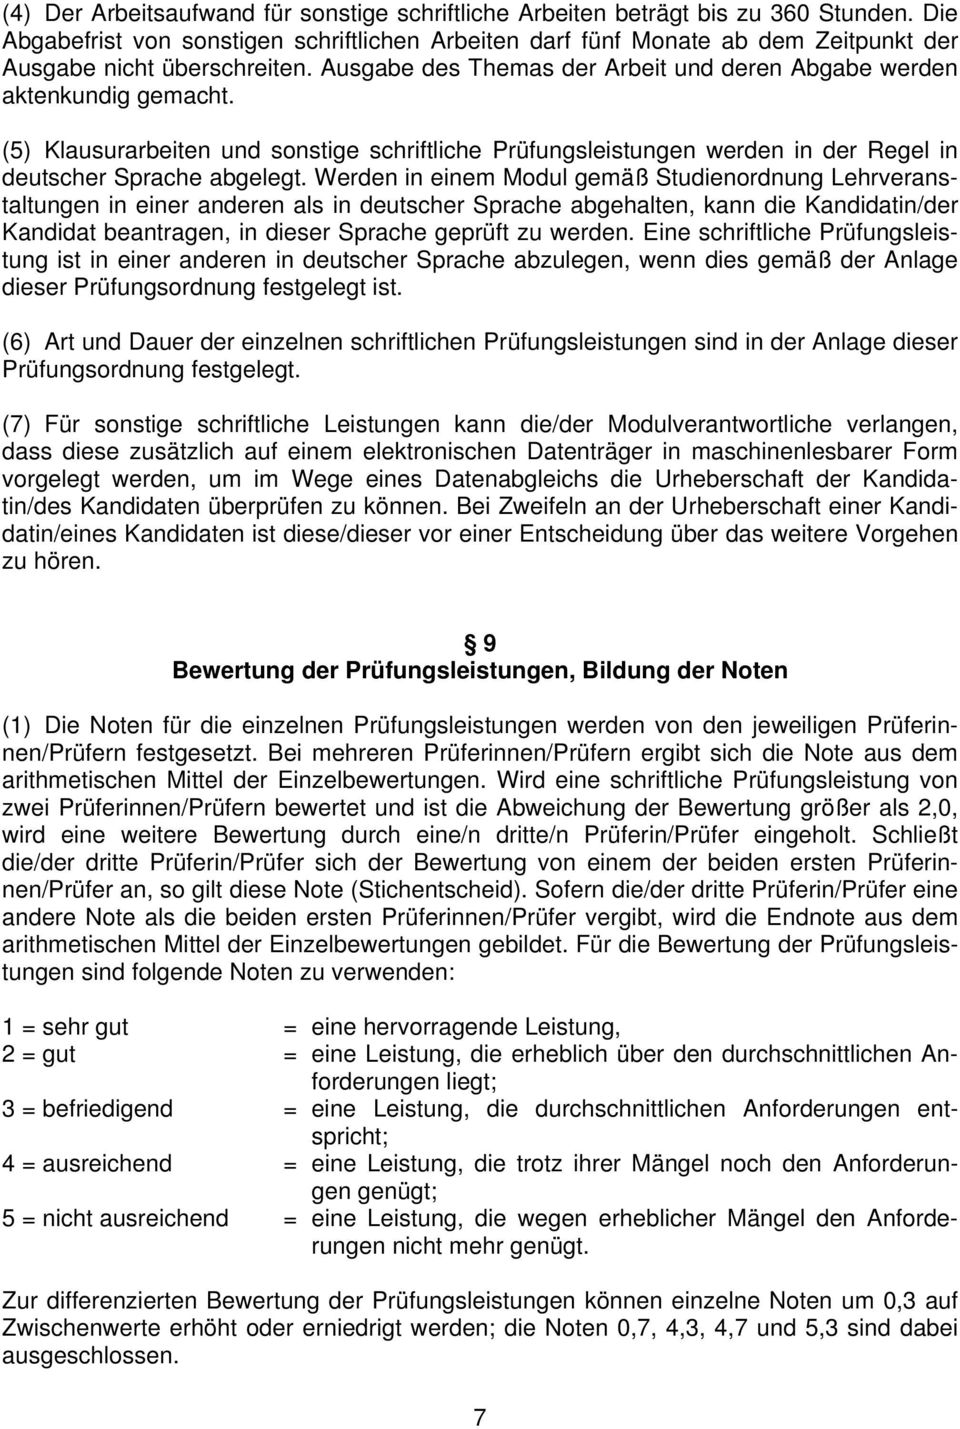 (5) Klausurarbeiten und sonstige schriftliche Prüfungsleistungen werden in der Regel in deutscher Sprache abgelegt.